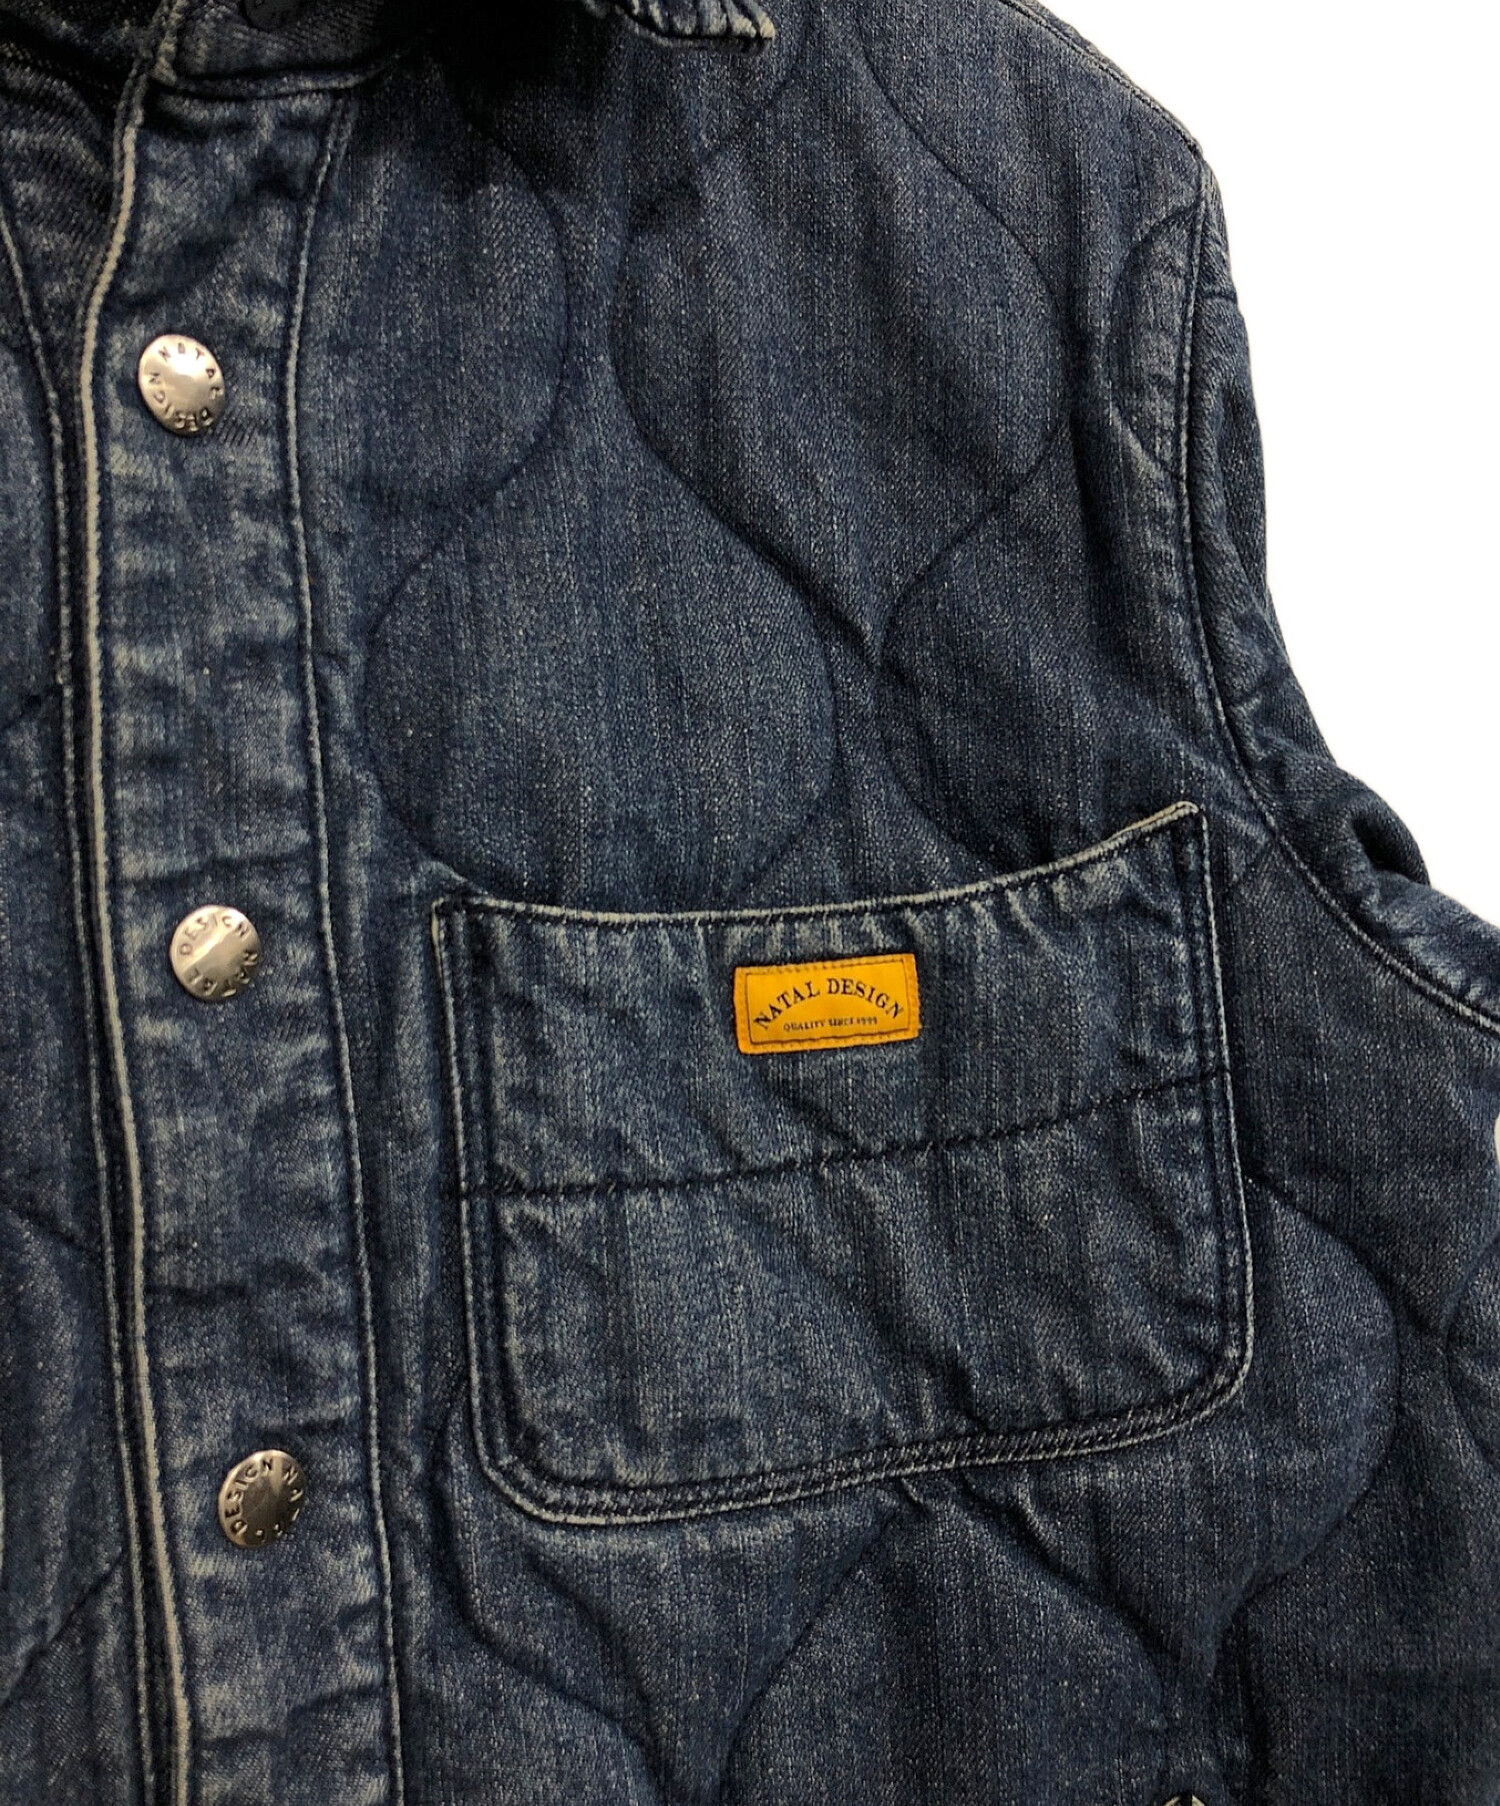 NATAL DESIGN (ネイタルデザイン) キルテッドシャツ4ジャケット ブルー サイズ:M